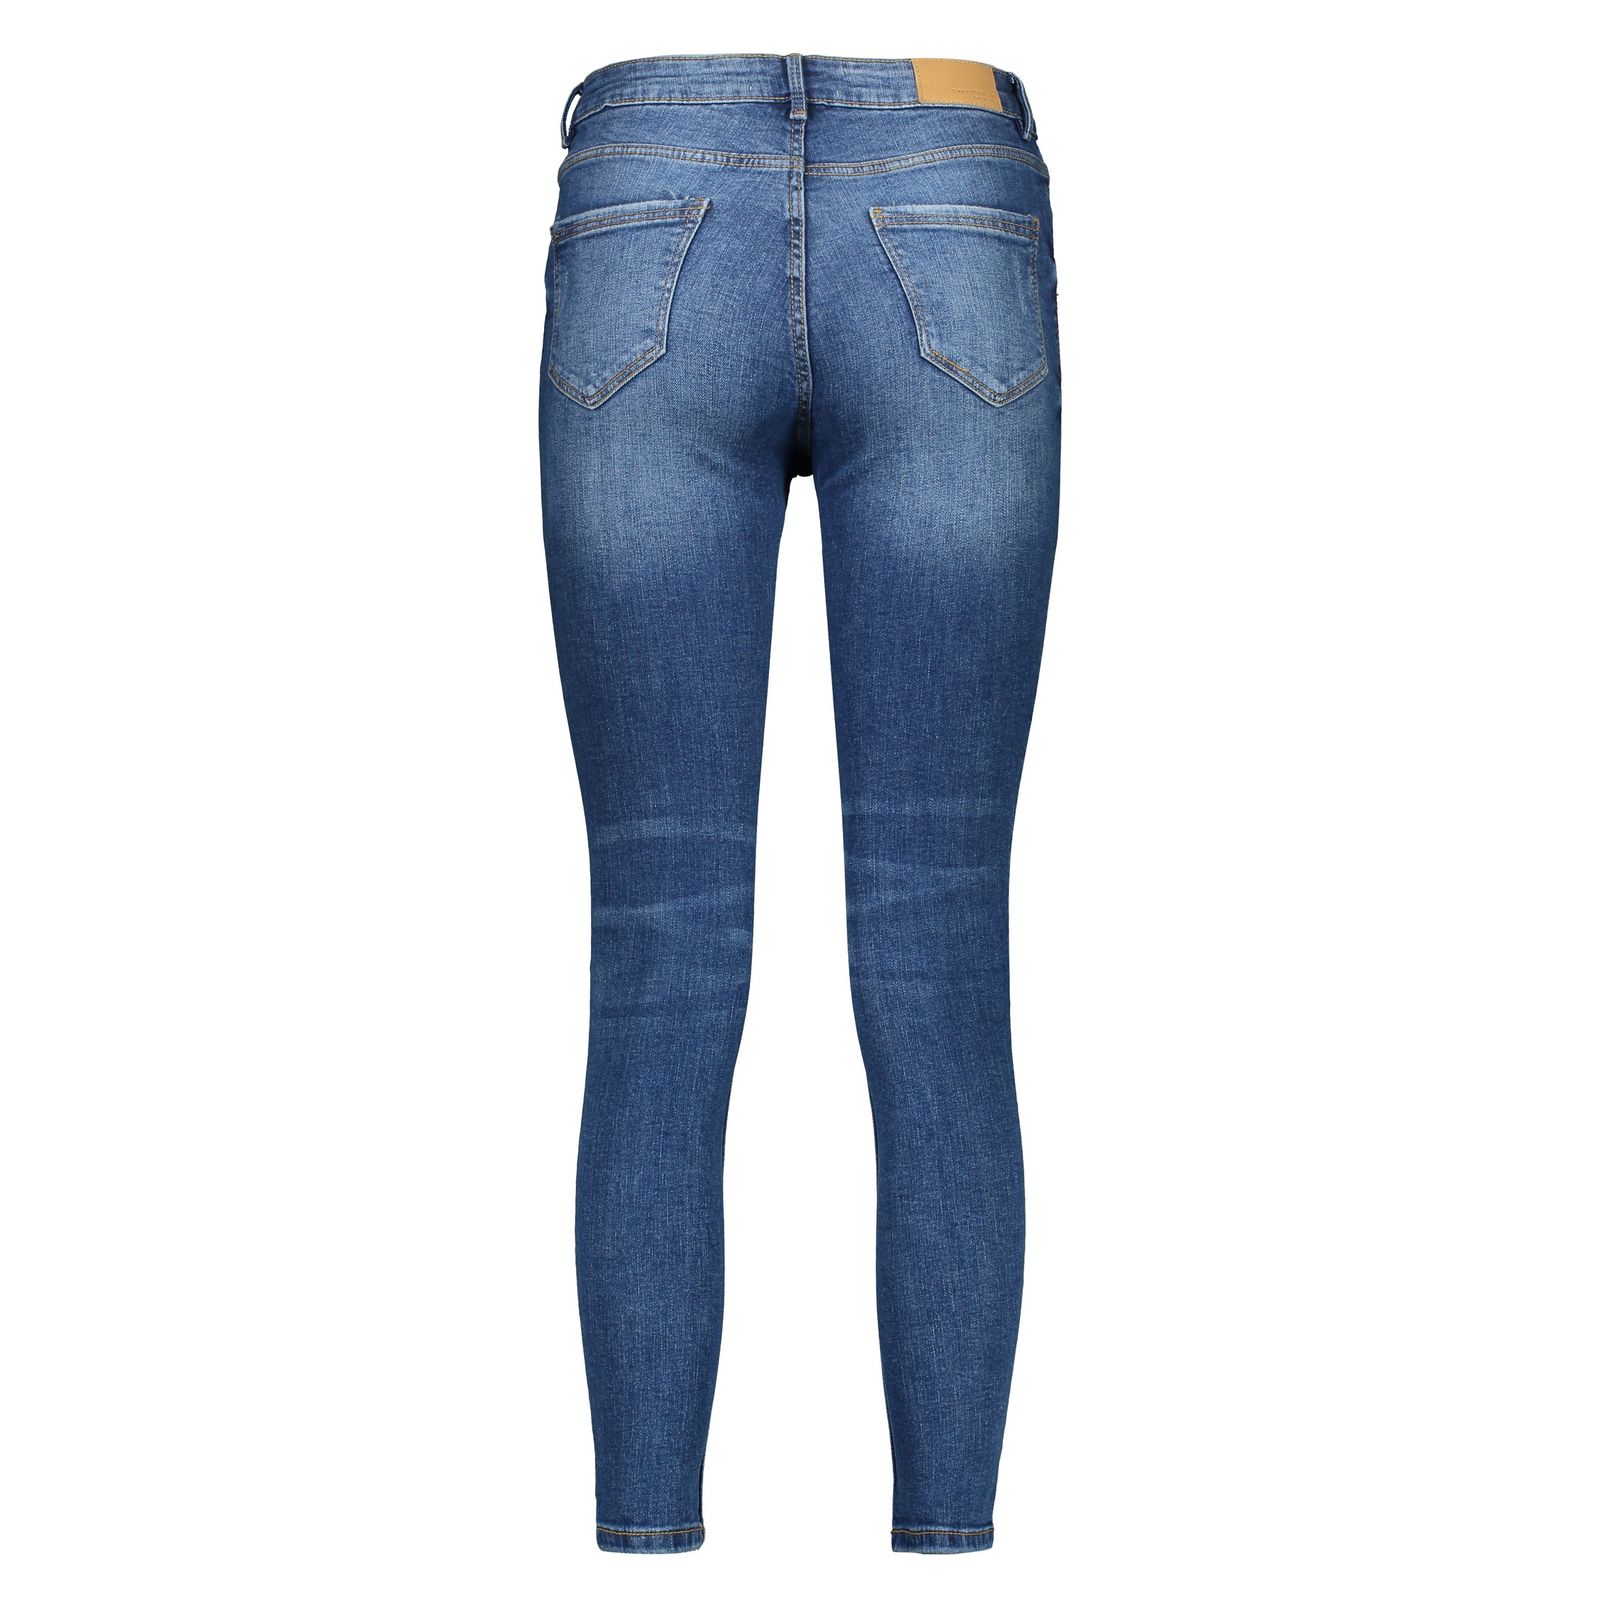 شلوار جین زنانه اسپرینگ فیلد مدل 6823513-BLUES - آبی - 4